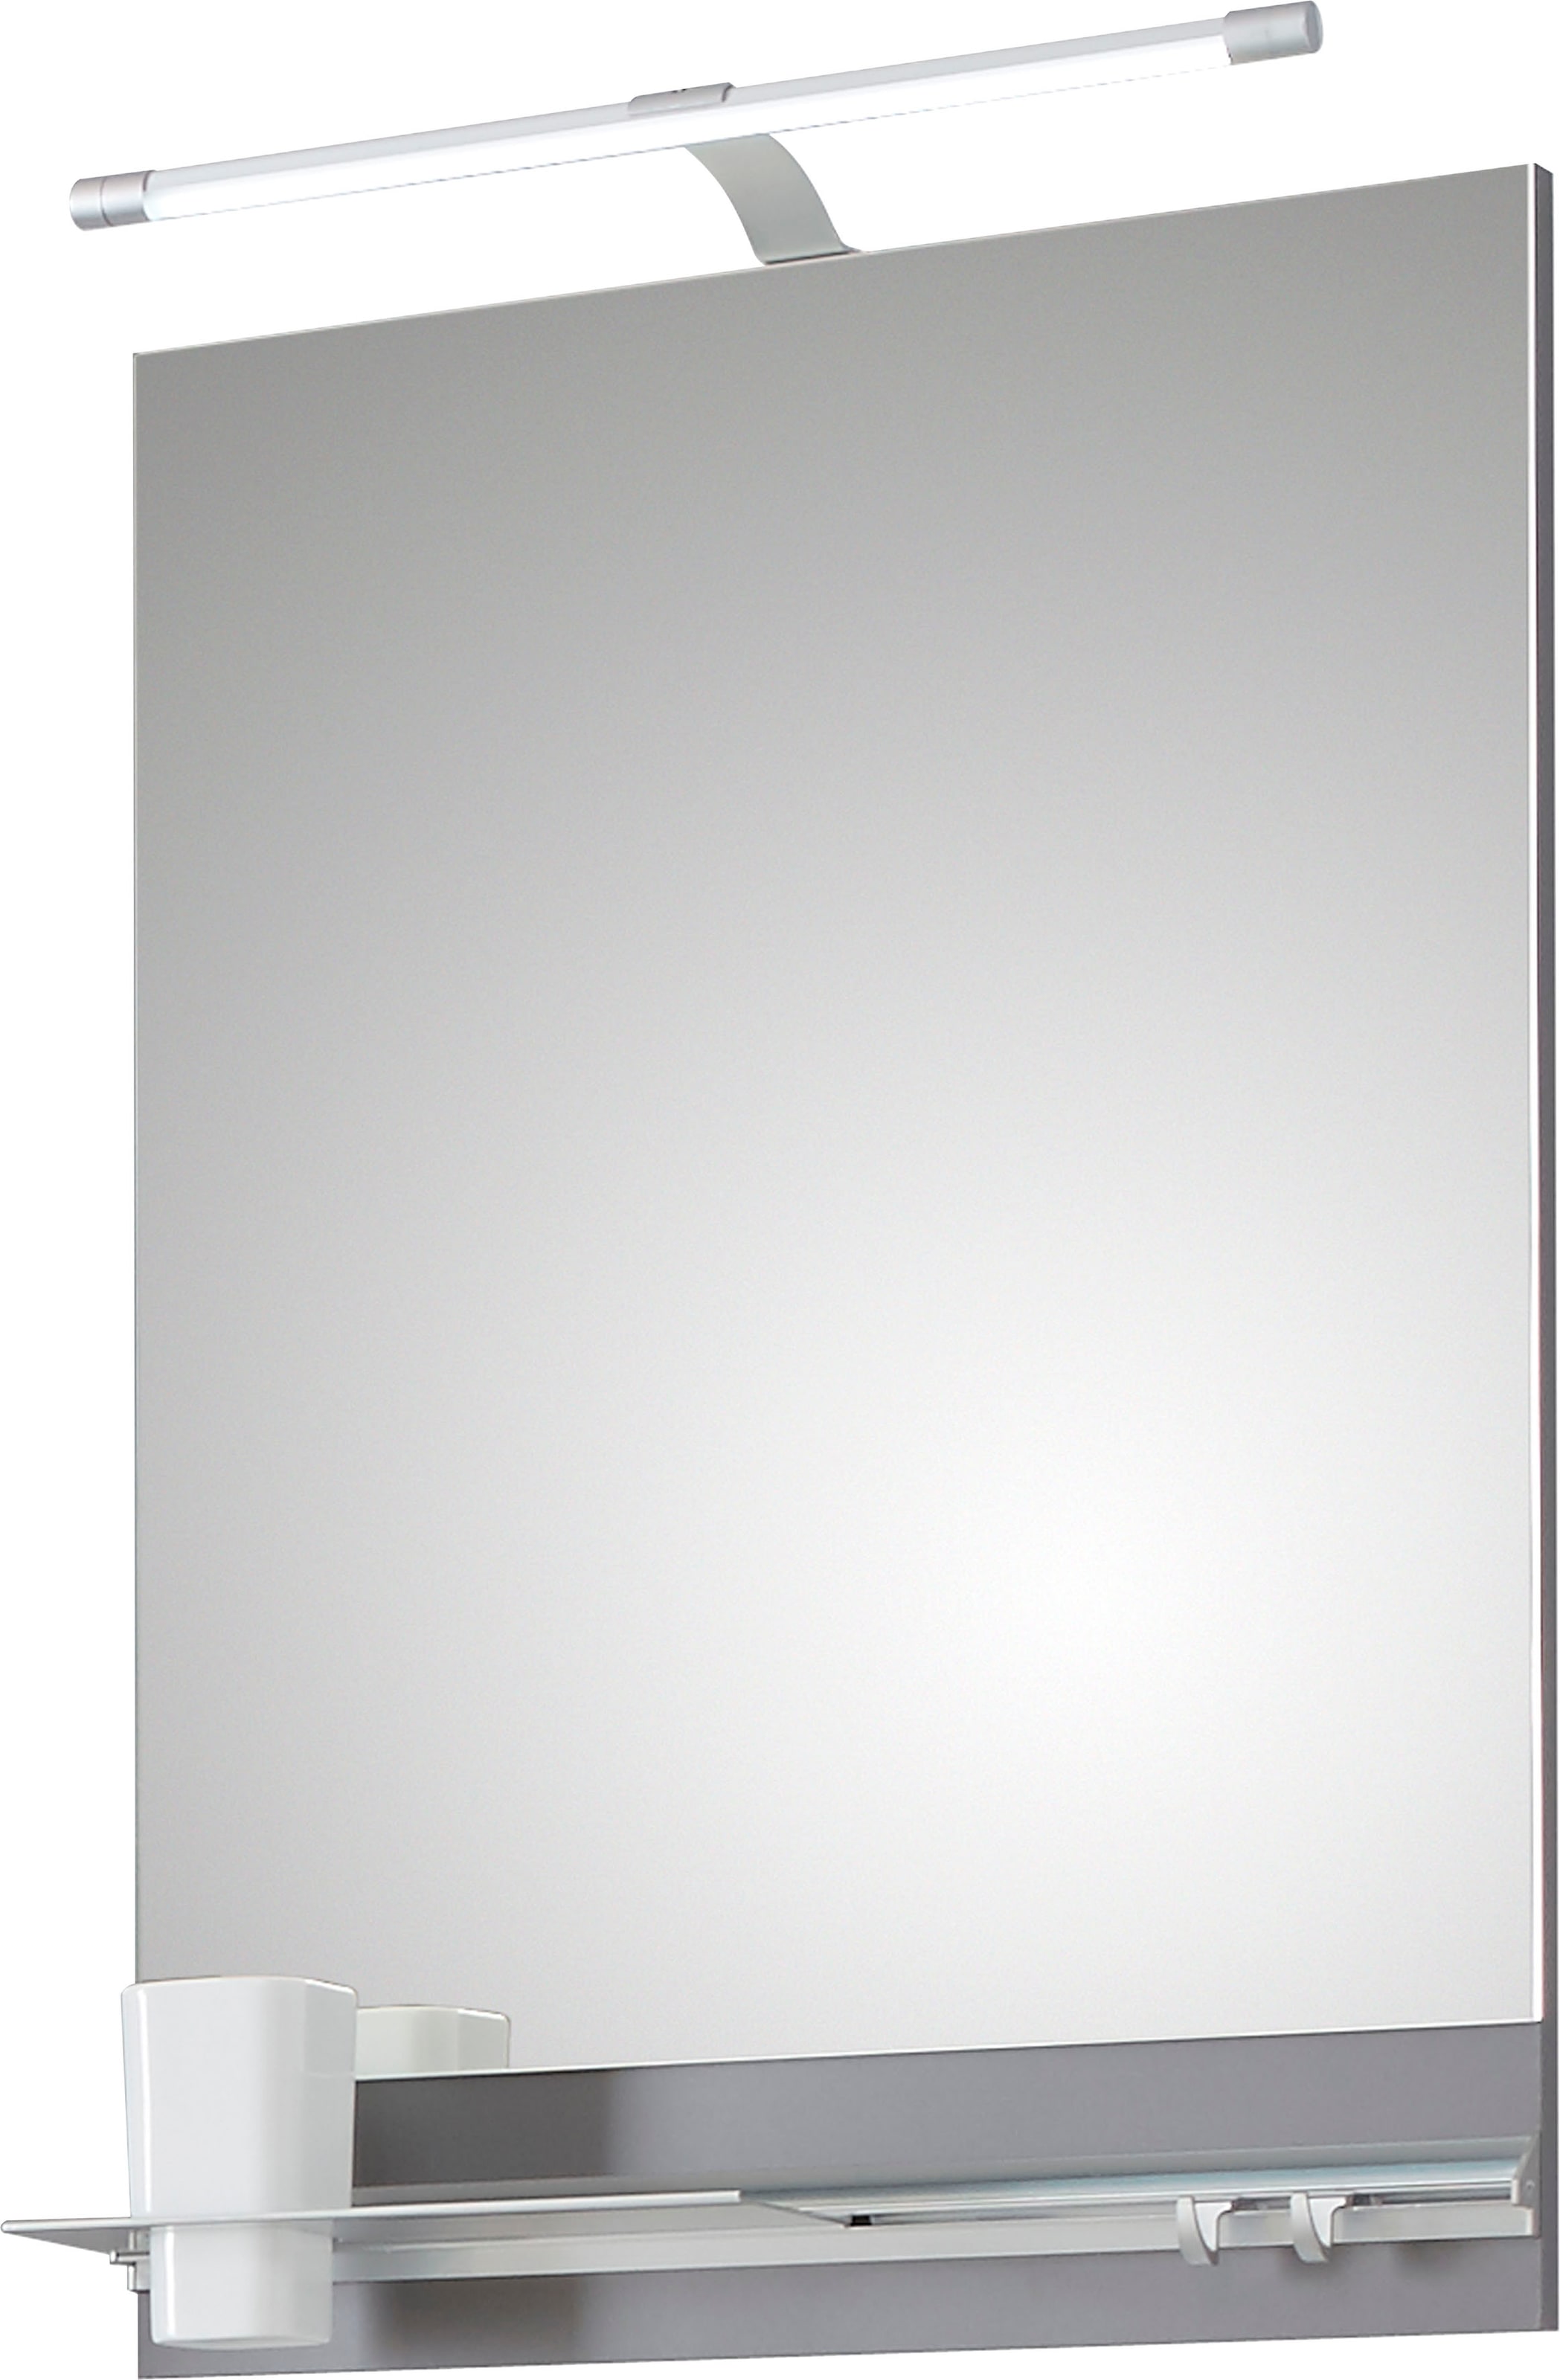 Saphir Badspiegel »Quickset 357 Spiegel 50 cm breit, 70 cm hoch, LED-Beleuchtung, 330LM«, (Set), Flächenspiegel Quarzgrau Matt, rechteckig, inkl. 1 Becher, 2 Haken